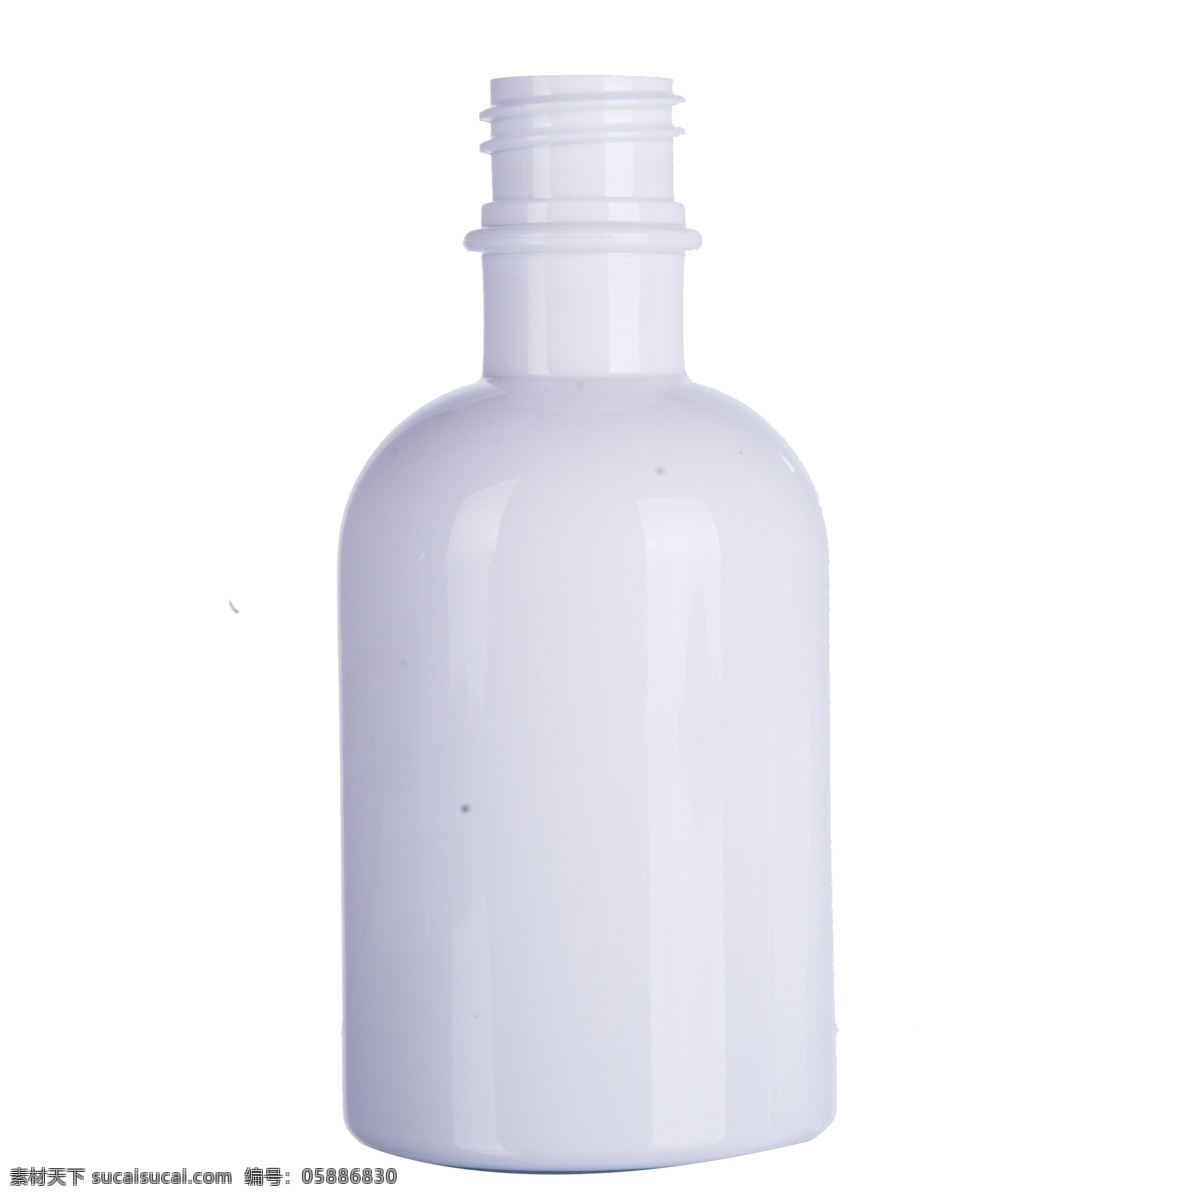 白色 塑料 瓶子 商品 塑料瓶子 化妆品瓶 白色瓶子 卡通瓶子 瓶子外观 瓶子工具 家居瓶子